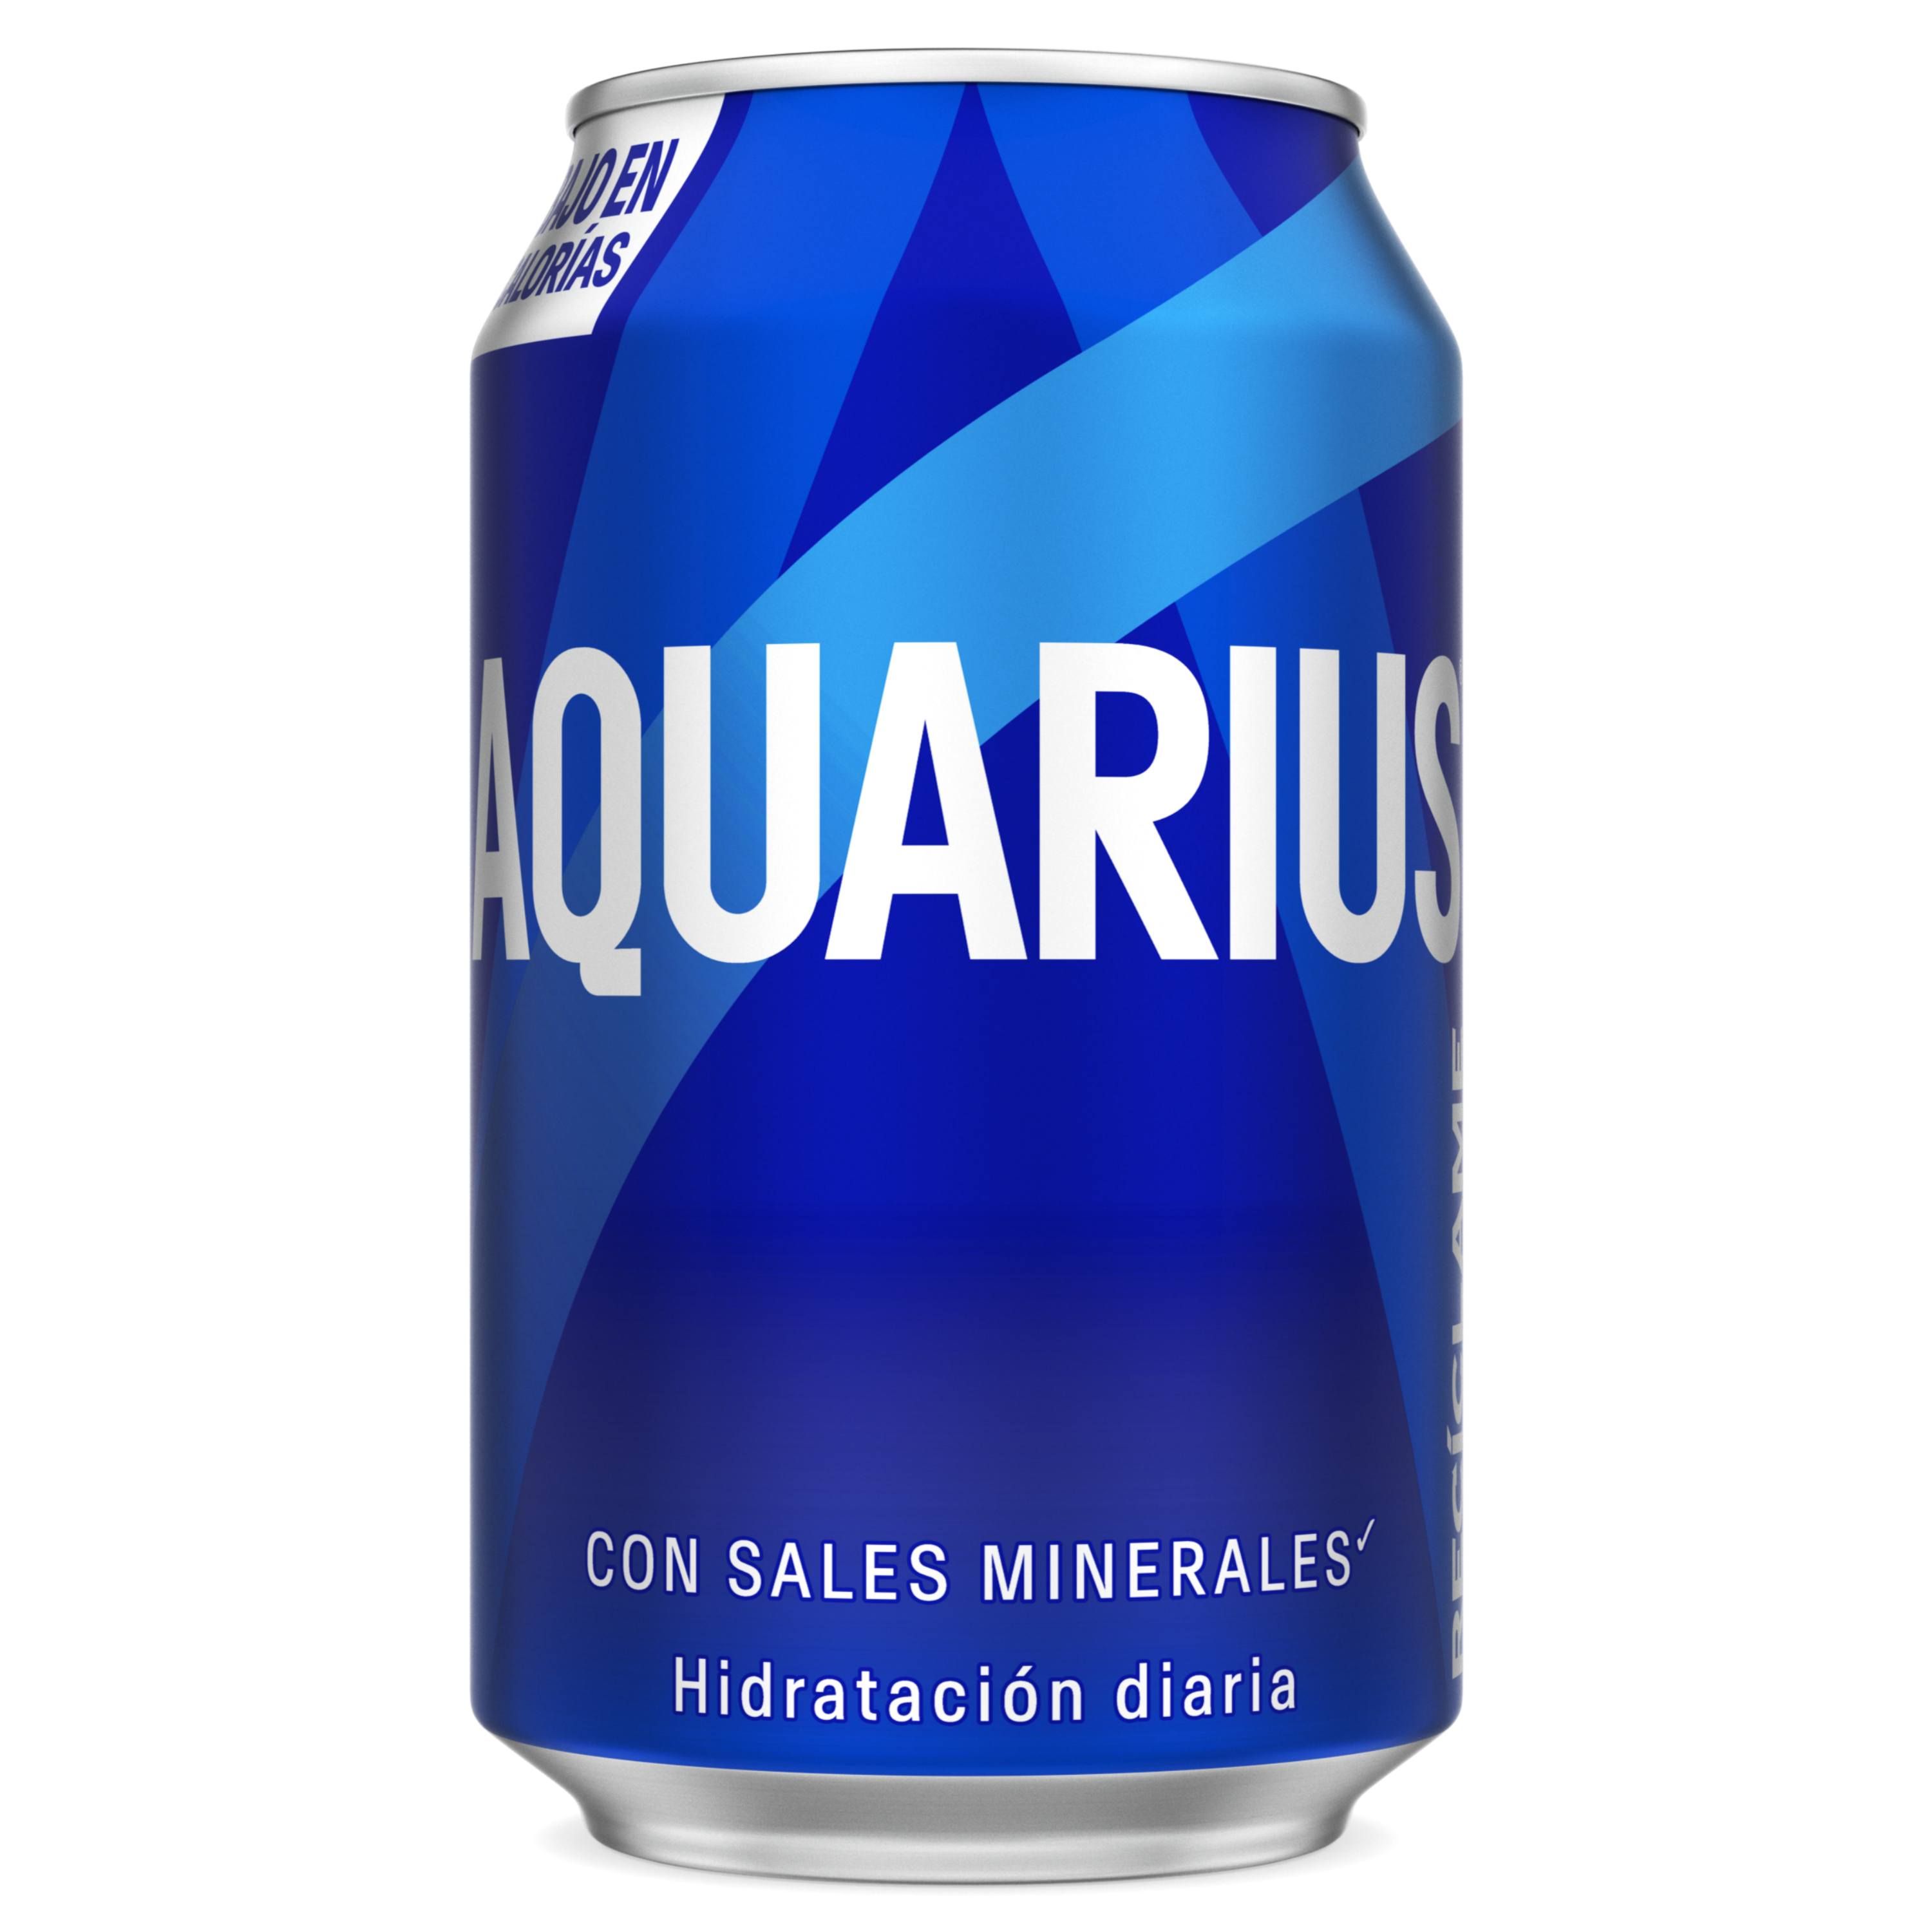 Lata de Aquarius